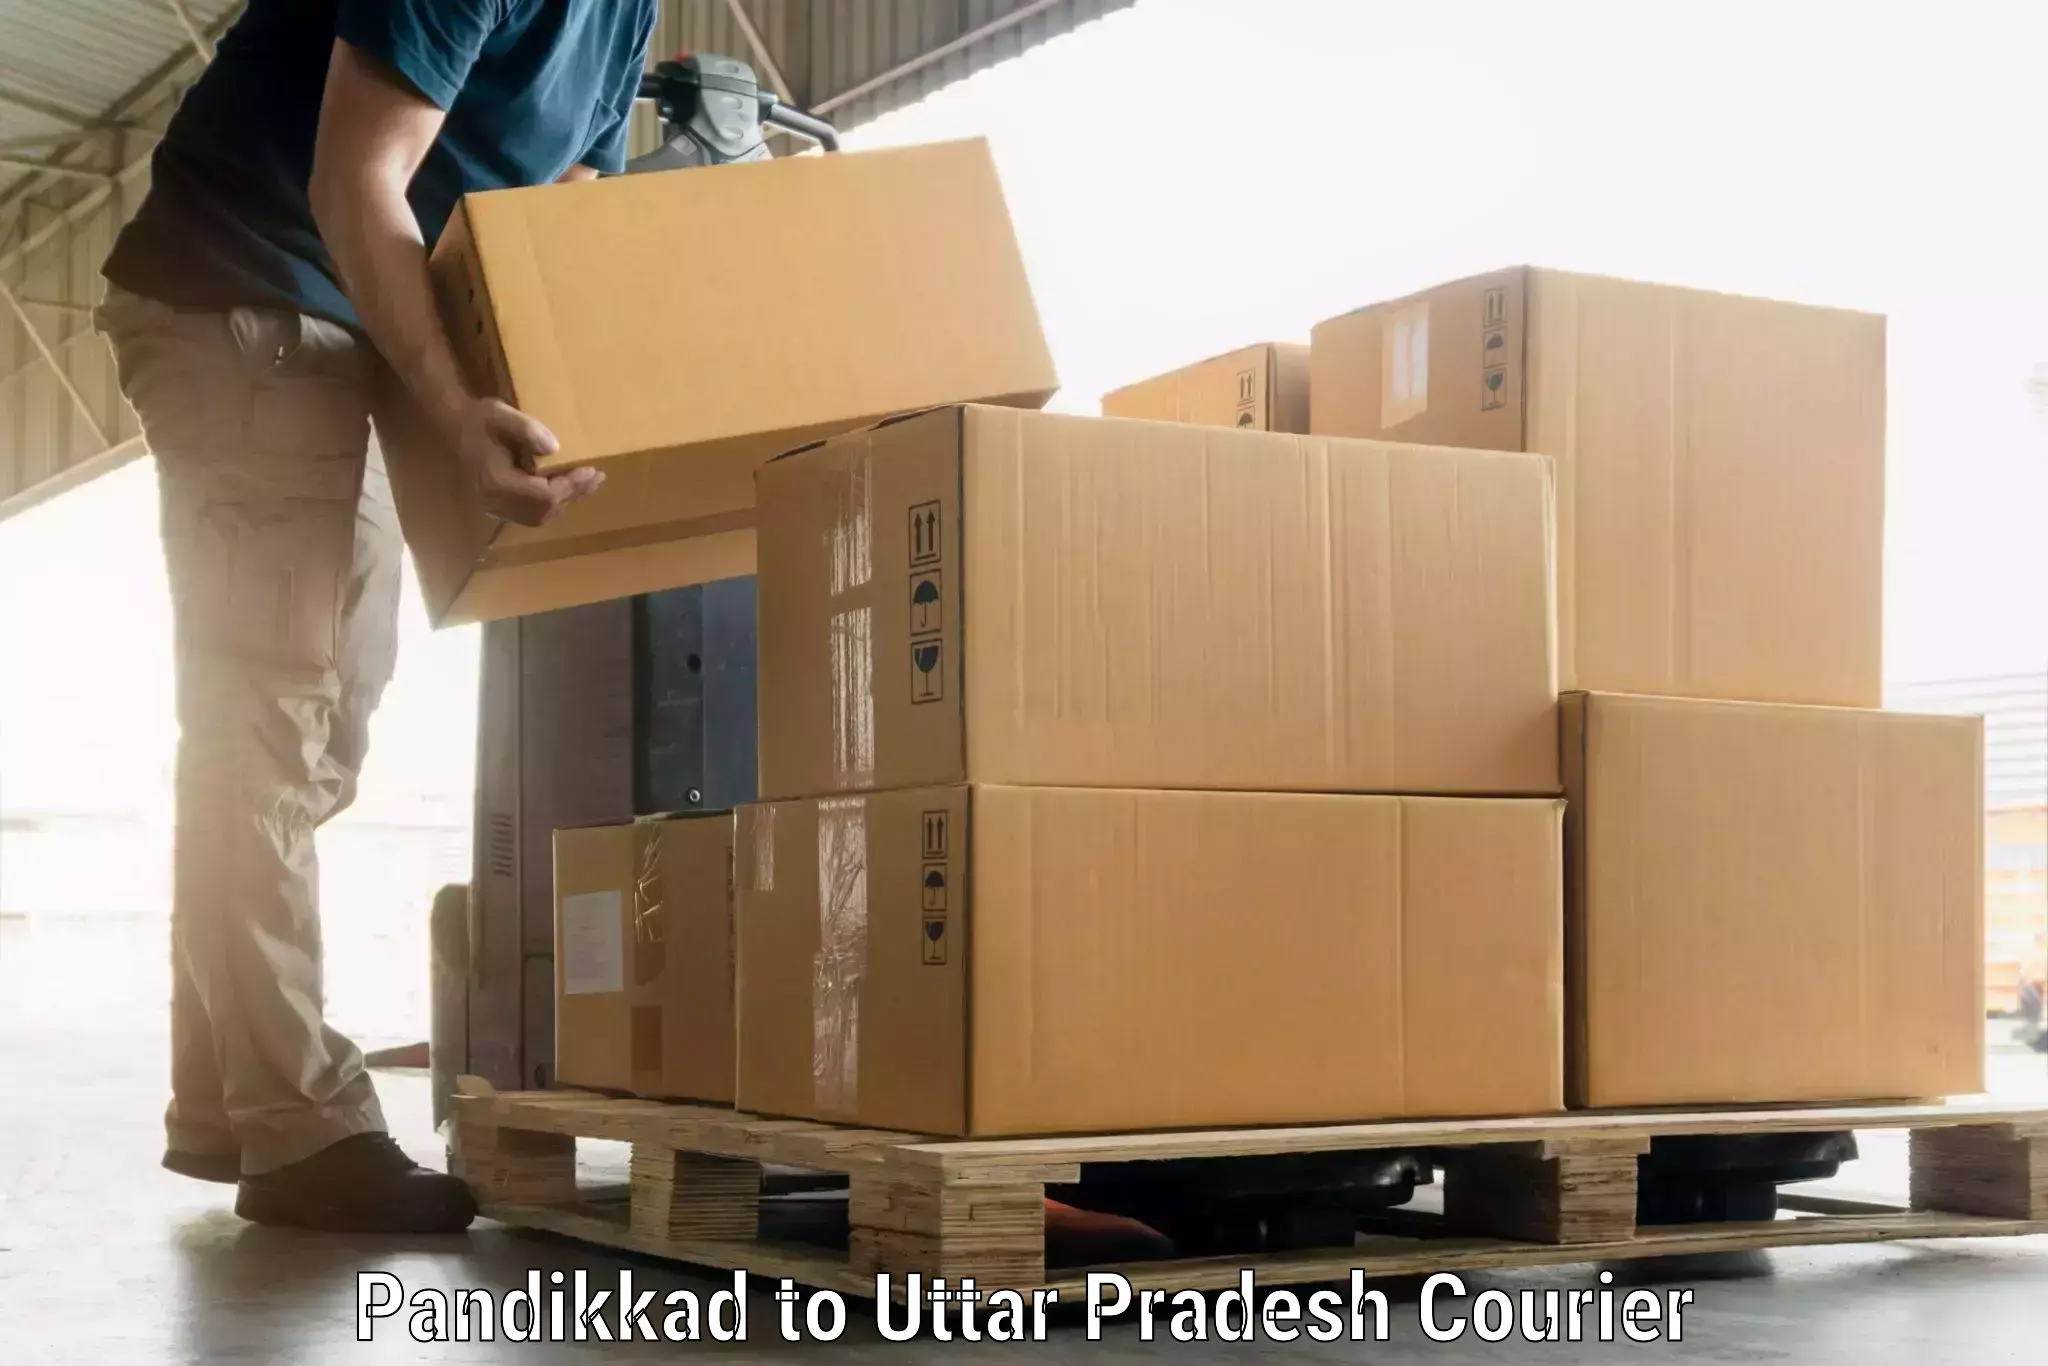 Electronic items luggage shipping Pandikkad to Chandauli